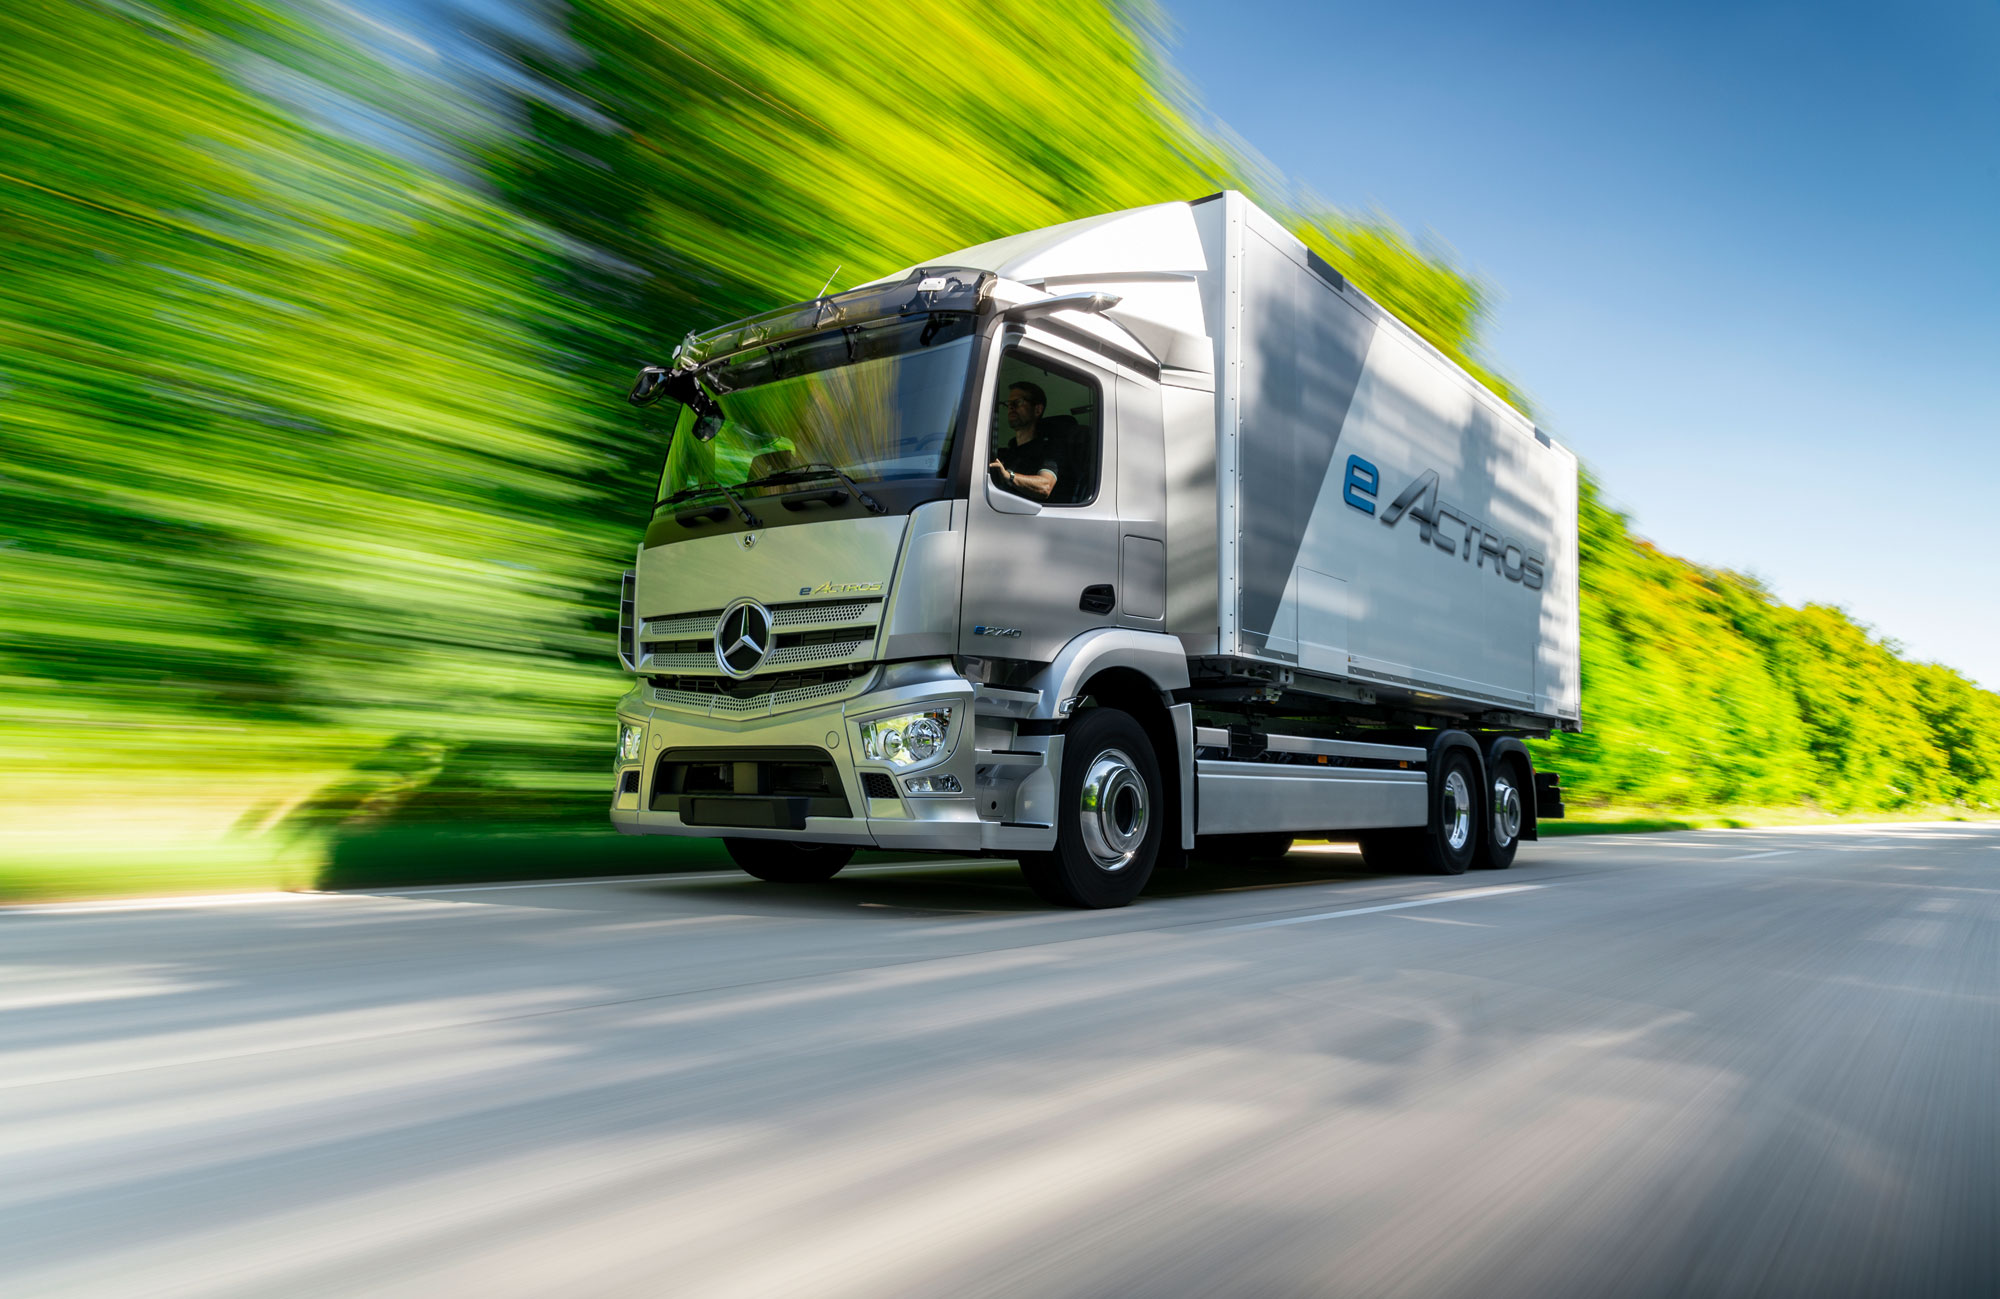 Die Daimler Truck AG und CATL haben 2019 eine weltweite Liefervereinbarung für Lithium-Ionen-Batteriezellenmodule für elektrische Serien-Lkw abgeschlossen. Im September 2020 kündigte die Daimler Truck AG den eActros LongHaul für den energieeffizienten Transport auf planbaren Fernverkehrsstrecken an. Seine Reichweite mit einer Batterieaufladung soll bei etwa 500 Kilometer liegen. Foto: Daimler AG